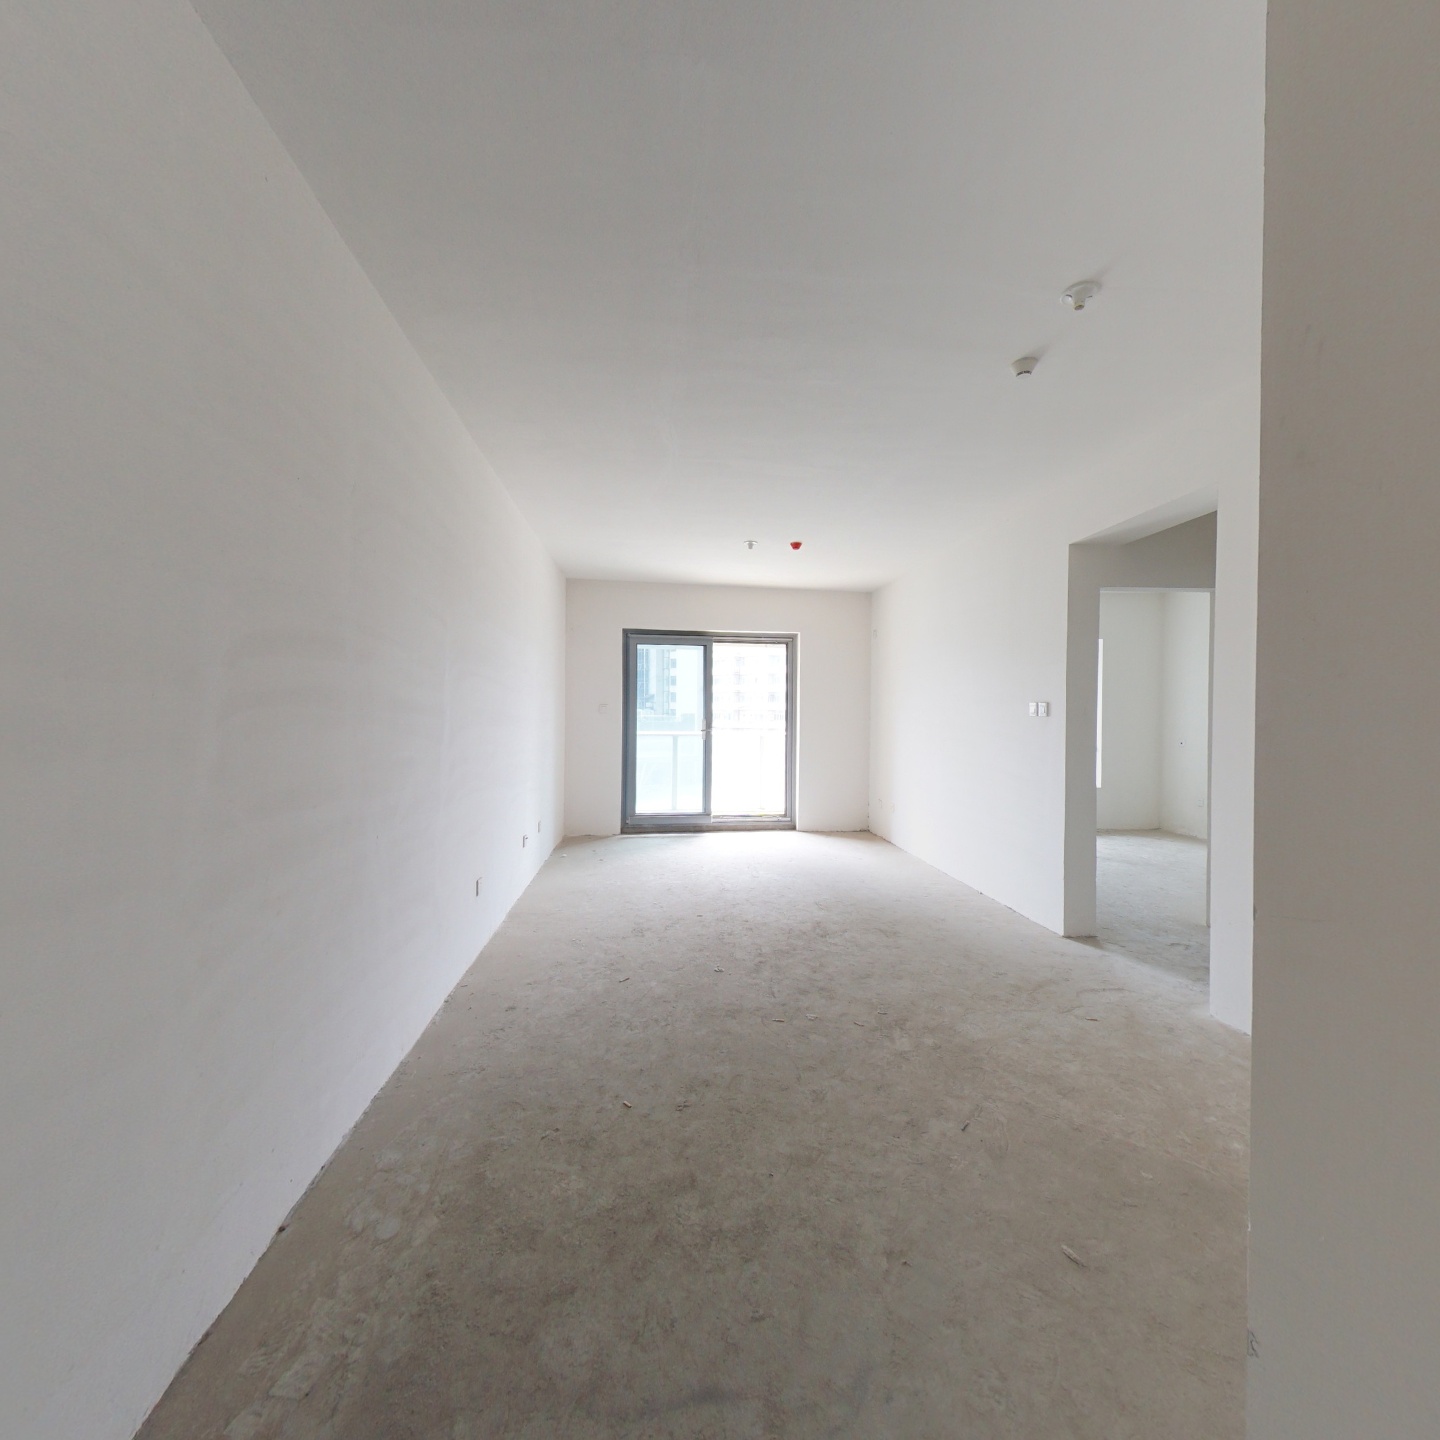 世纪江尚 品质小区 89平米两居室 得房率高